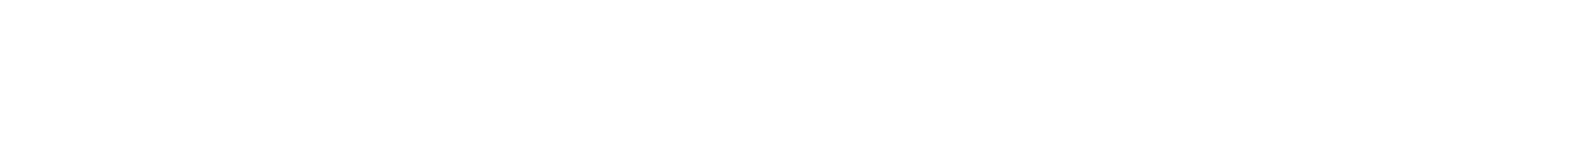 Autodesk logo grand pour les fonds sombres (PNG transparent)